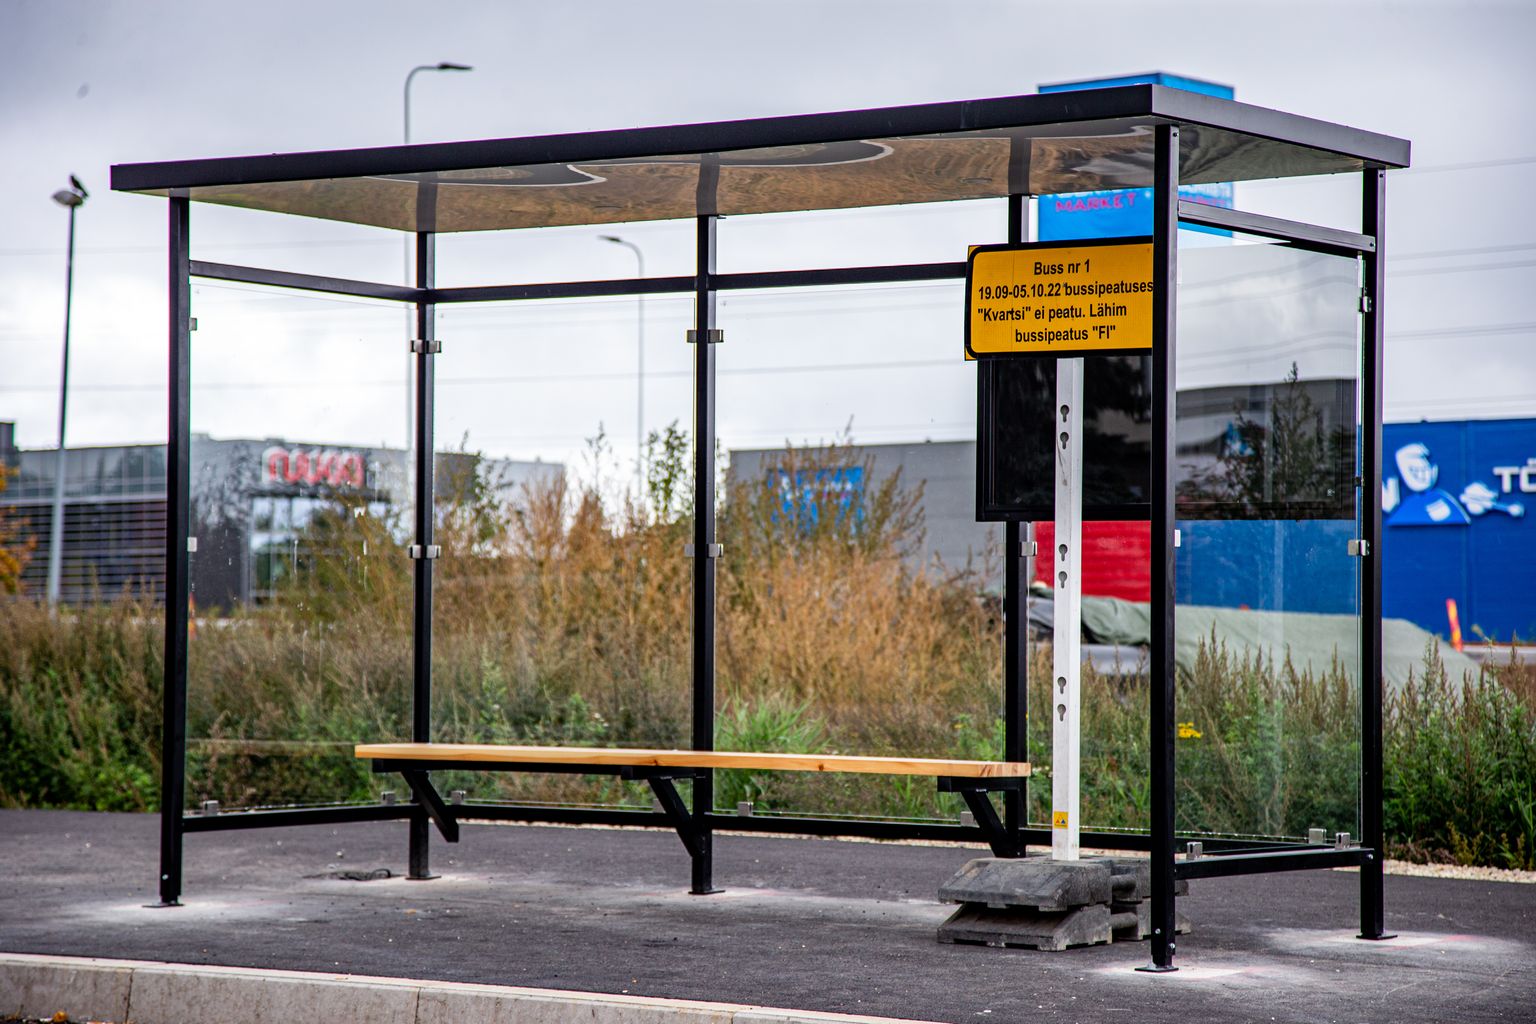 Ränilinna loodi uus Kvartsi bussipeatus, millega pikendati bussi nr 1 marsuuti.